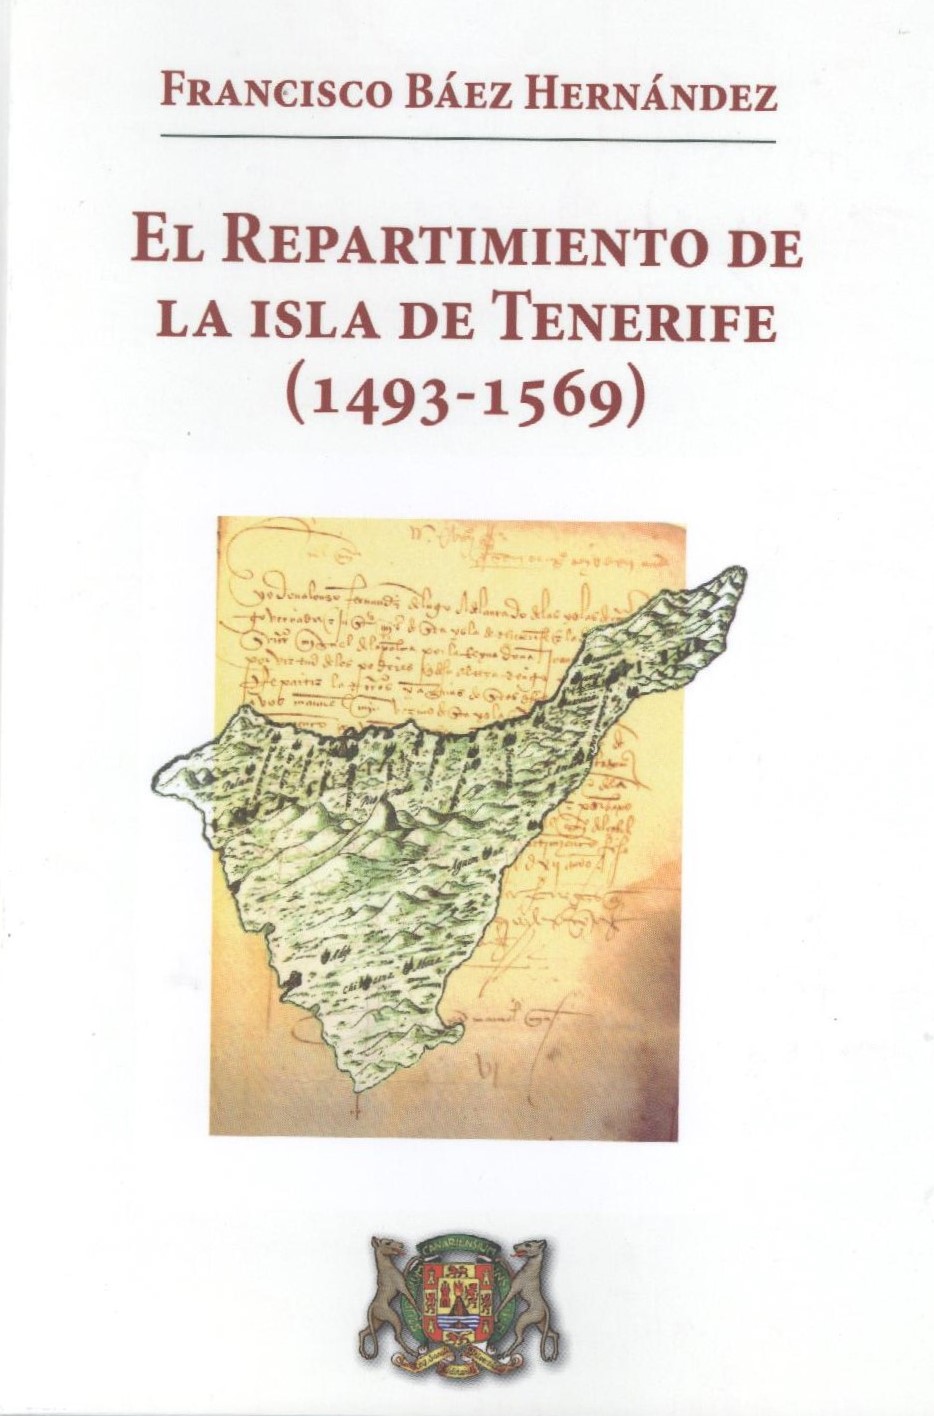 Imagen de portada del libro El repartimiento de la isla de Tenerife